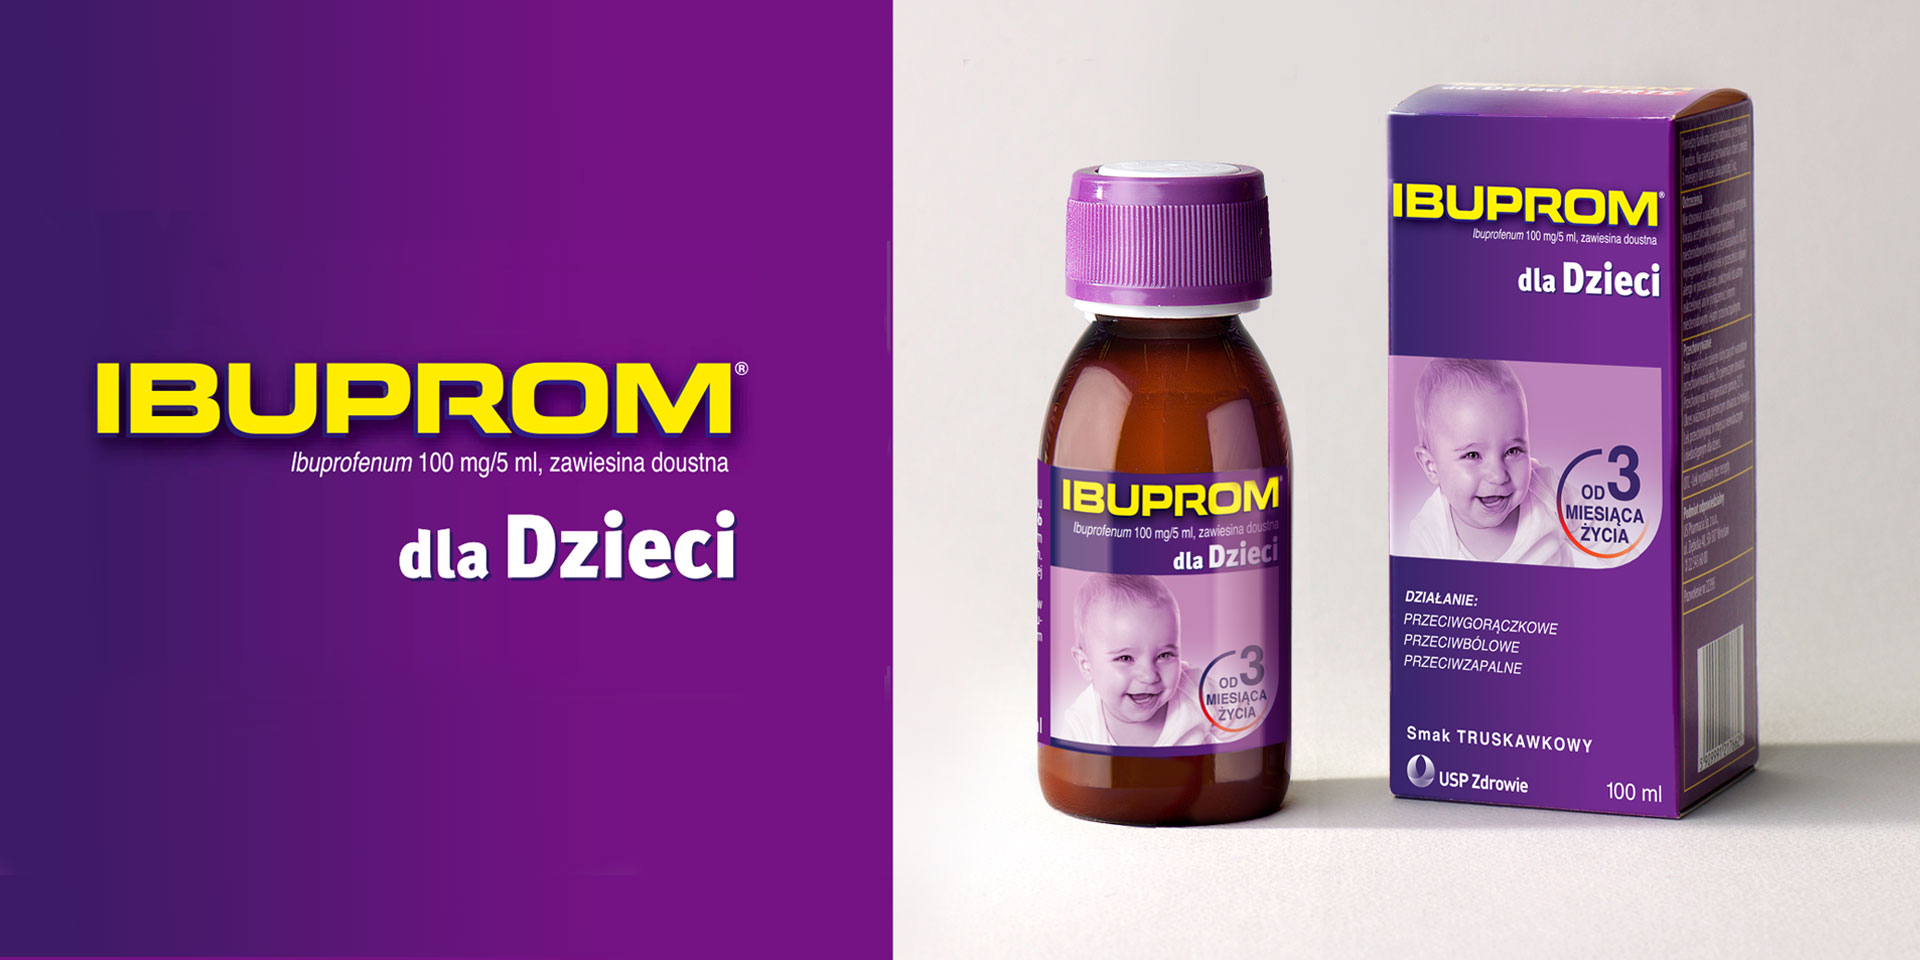 opakowanie ibuprom dla dzieci - branding z PND Futura